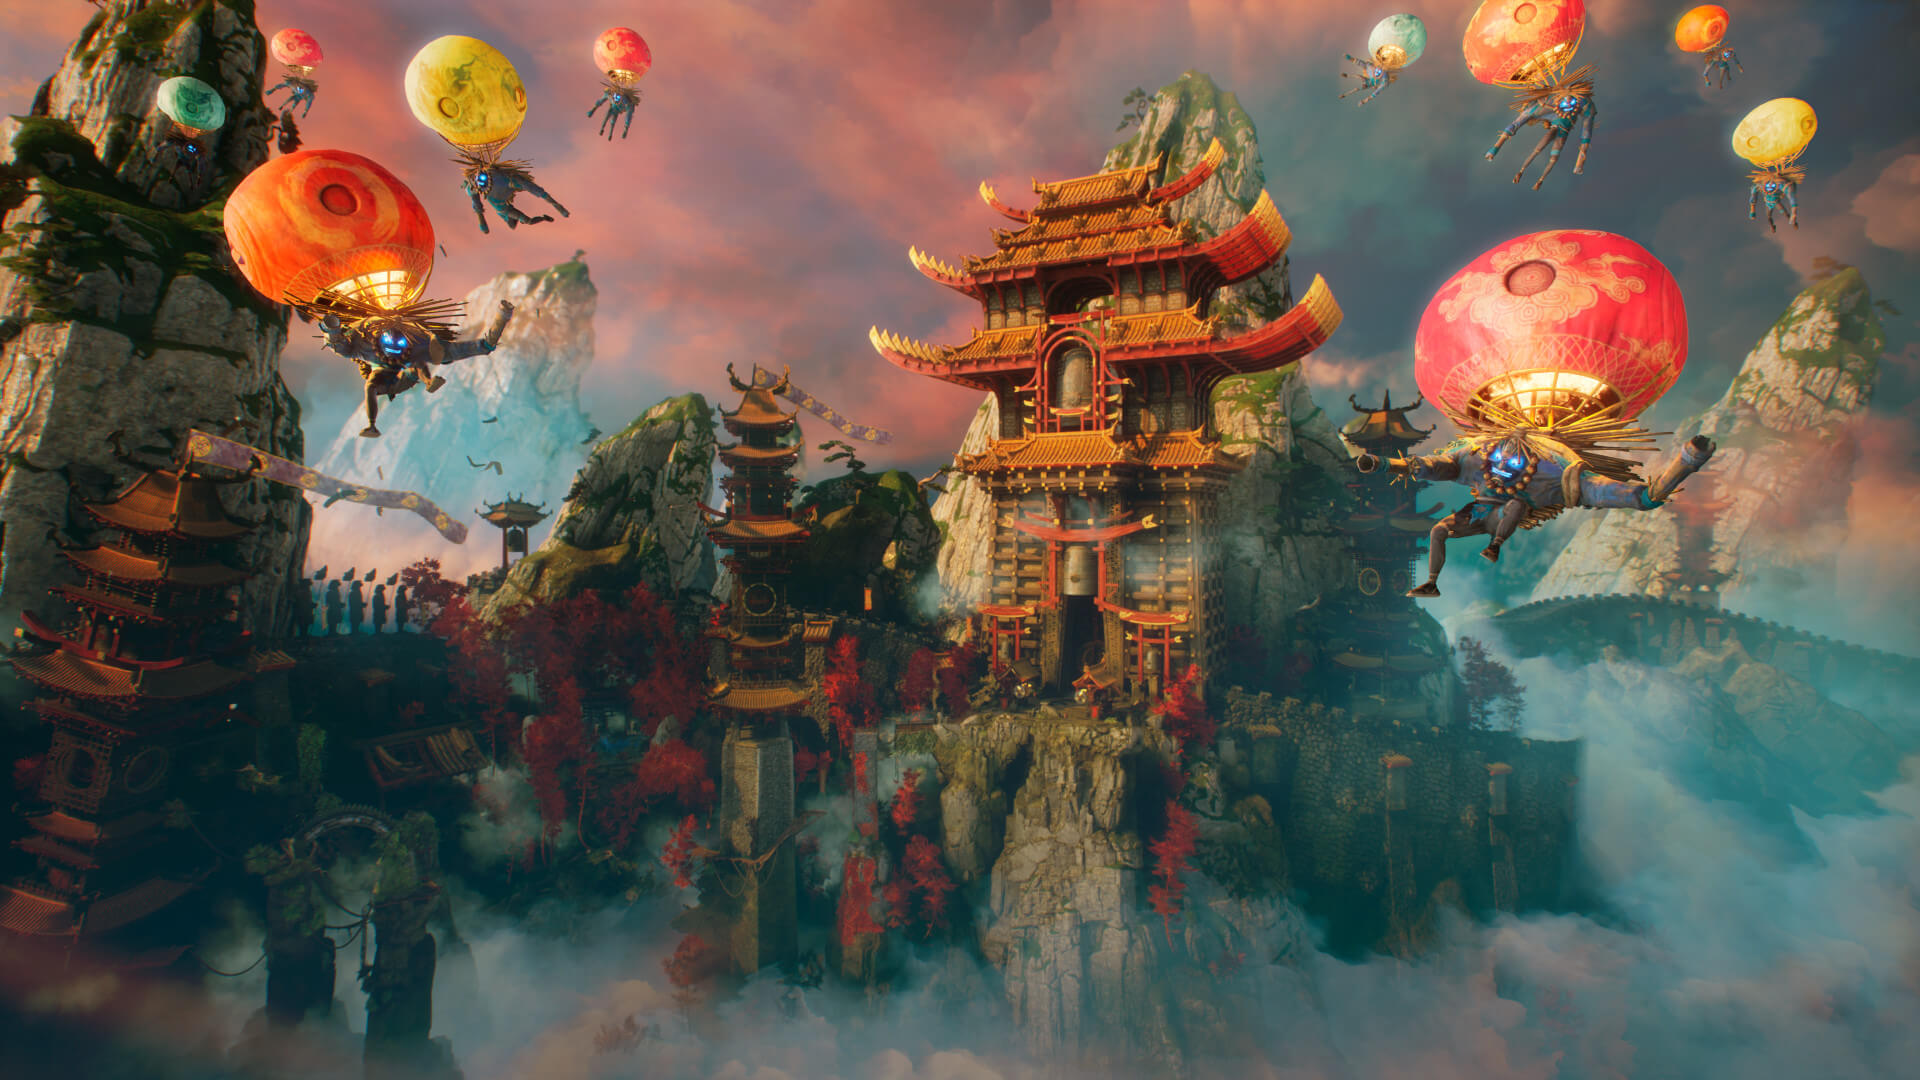 《影武者3》首批遊戲截圖發布 2021年發售